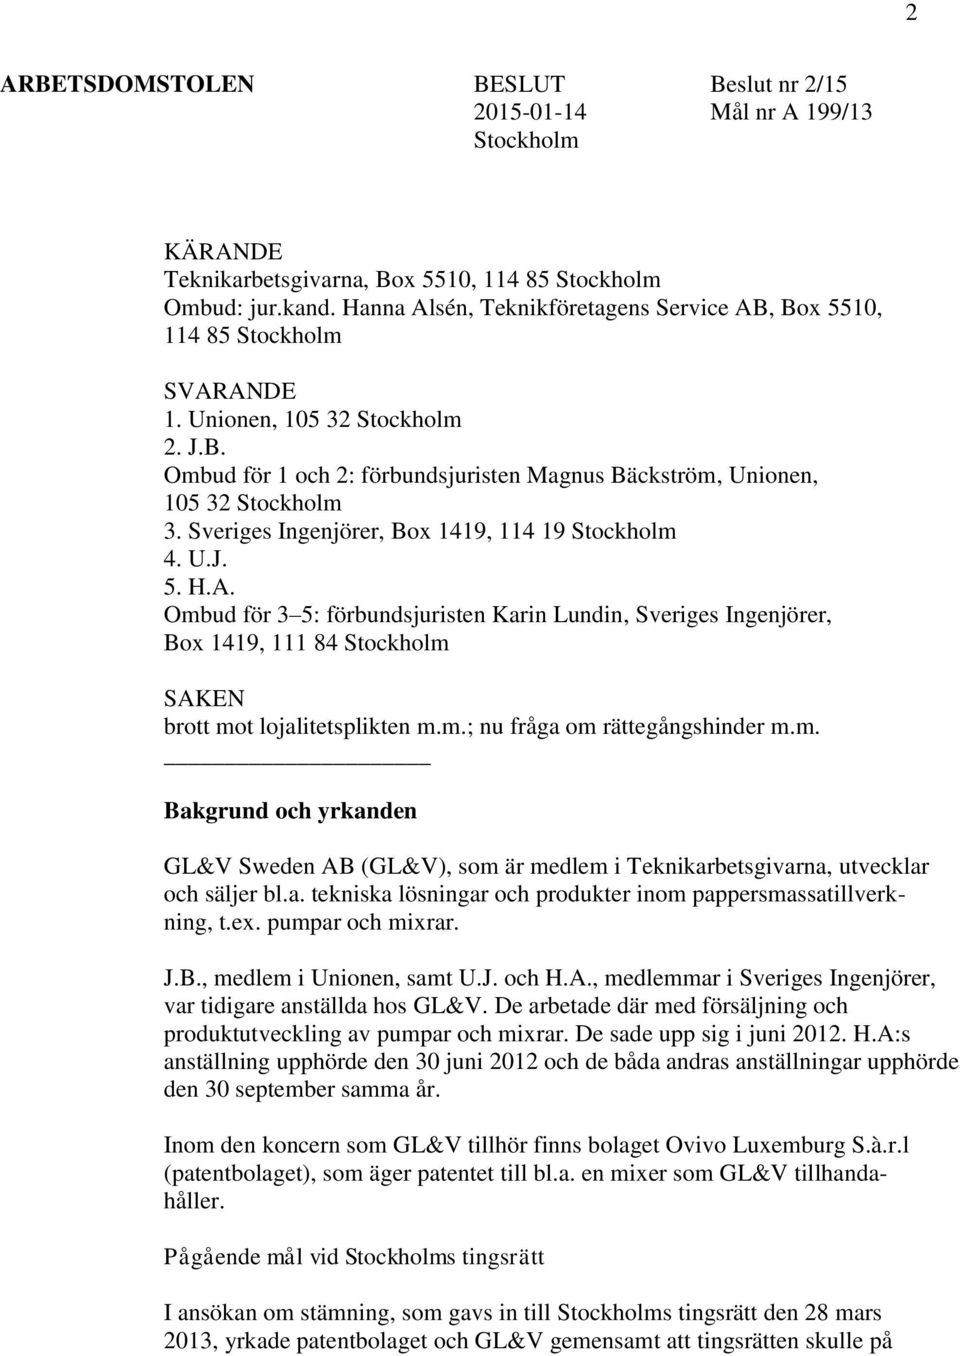 Sveriges Ingenjörer, Box 1419, 114 19 Stockholm 4. U.J. 5. H.A. Ombud för 3 5: förbundsjuristen Karin Lundin, Sveriges Ingenjörer, Box 1419, 111 84 Stockholm SAKEN brott mot lojalitetsplikten m.m.; nu fråga om rättegångshinder m.